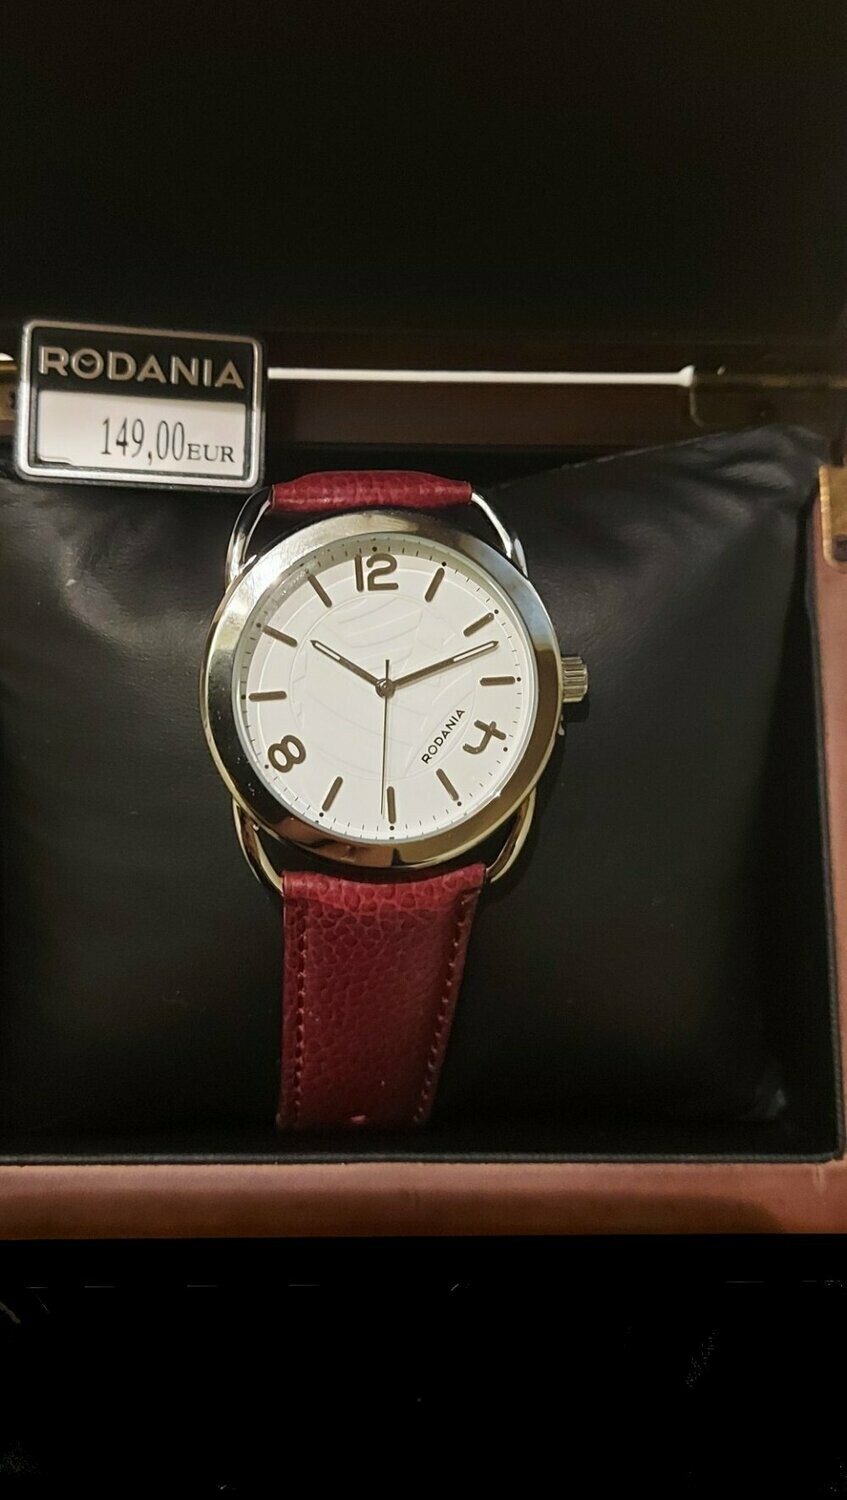 Nieuw ! ... klassevol Rodania uurwerk aan spotprijs (uit faling)